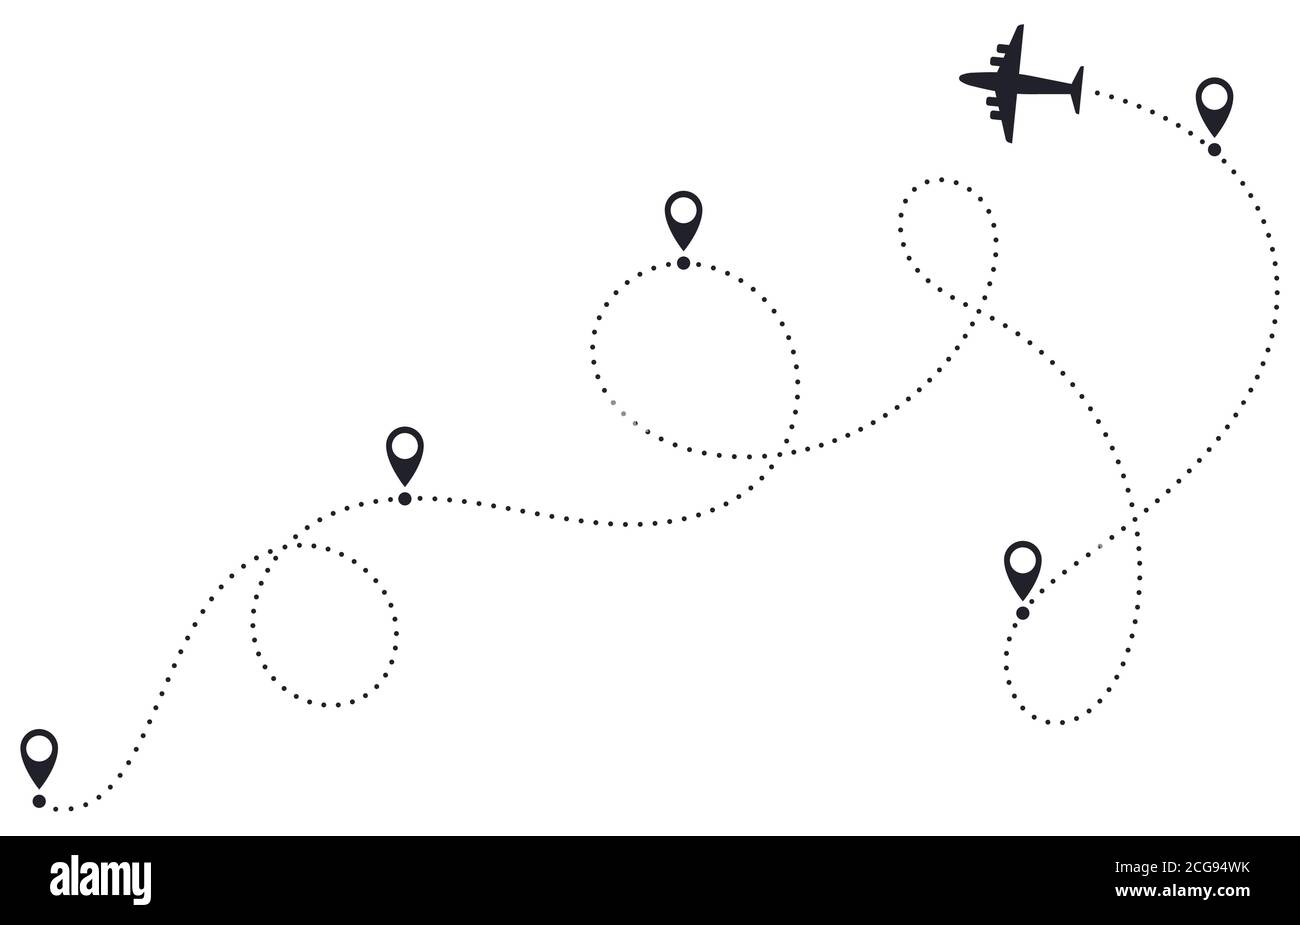 Línea de ruta del avión. Ruta punteada del plano, ruta de destino del avión, ruta de destino de viaje del avión, mapa de viaje del avión ilustración vectorial Ilustración del Vector